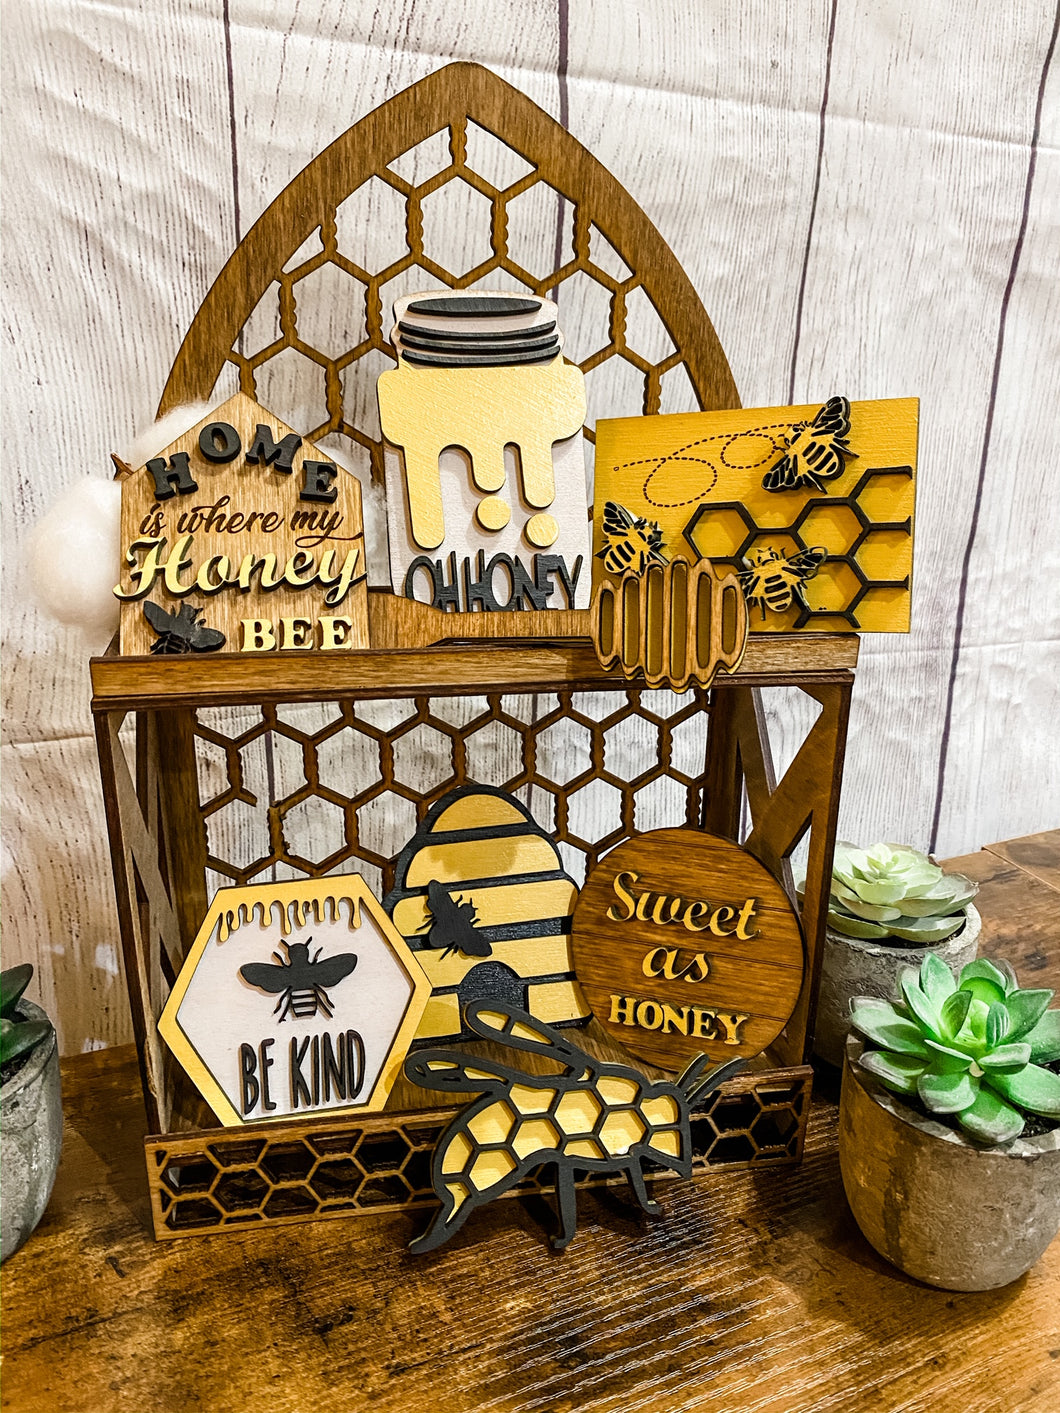 Tiered Tray Honey, Bee Kind Decor